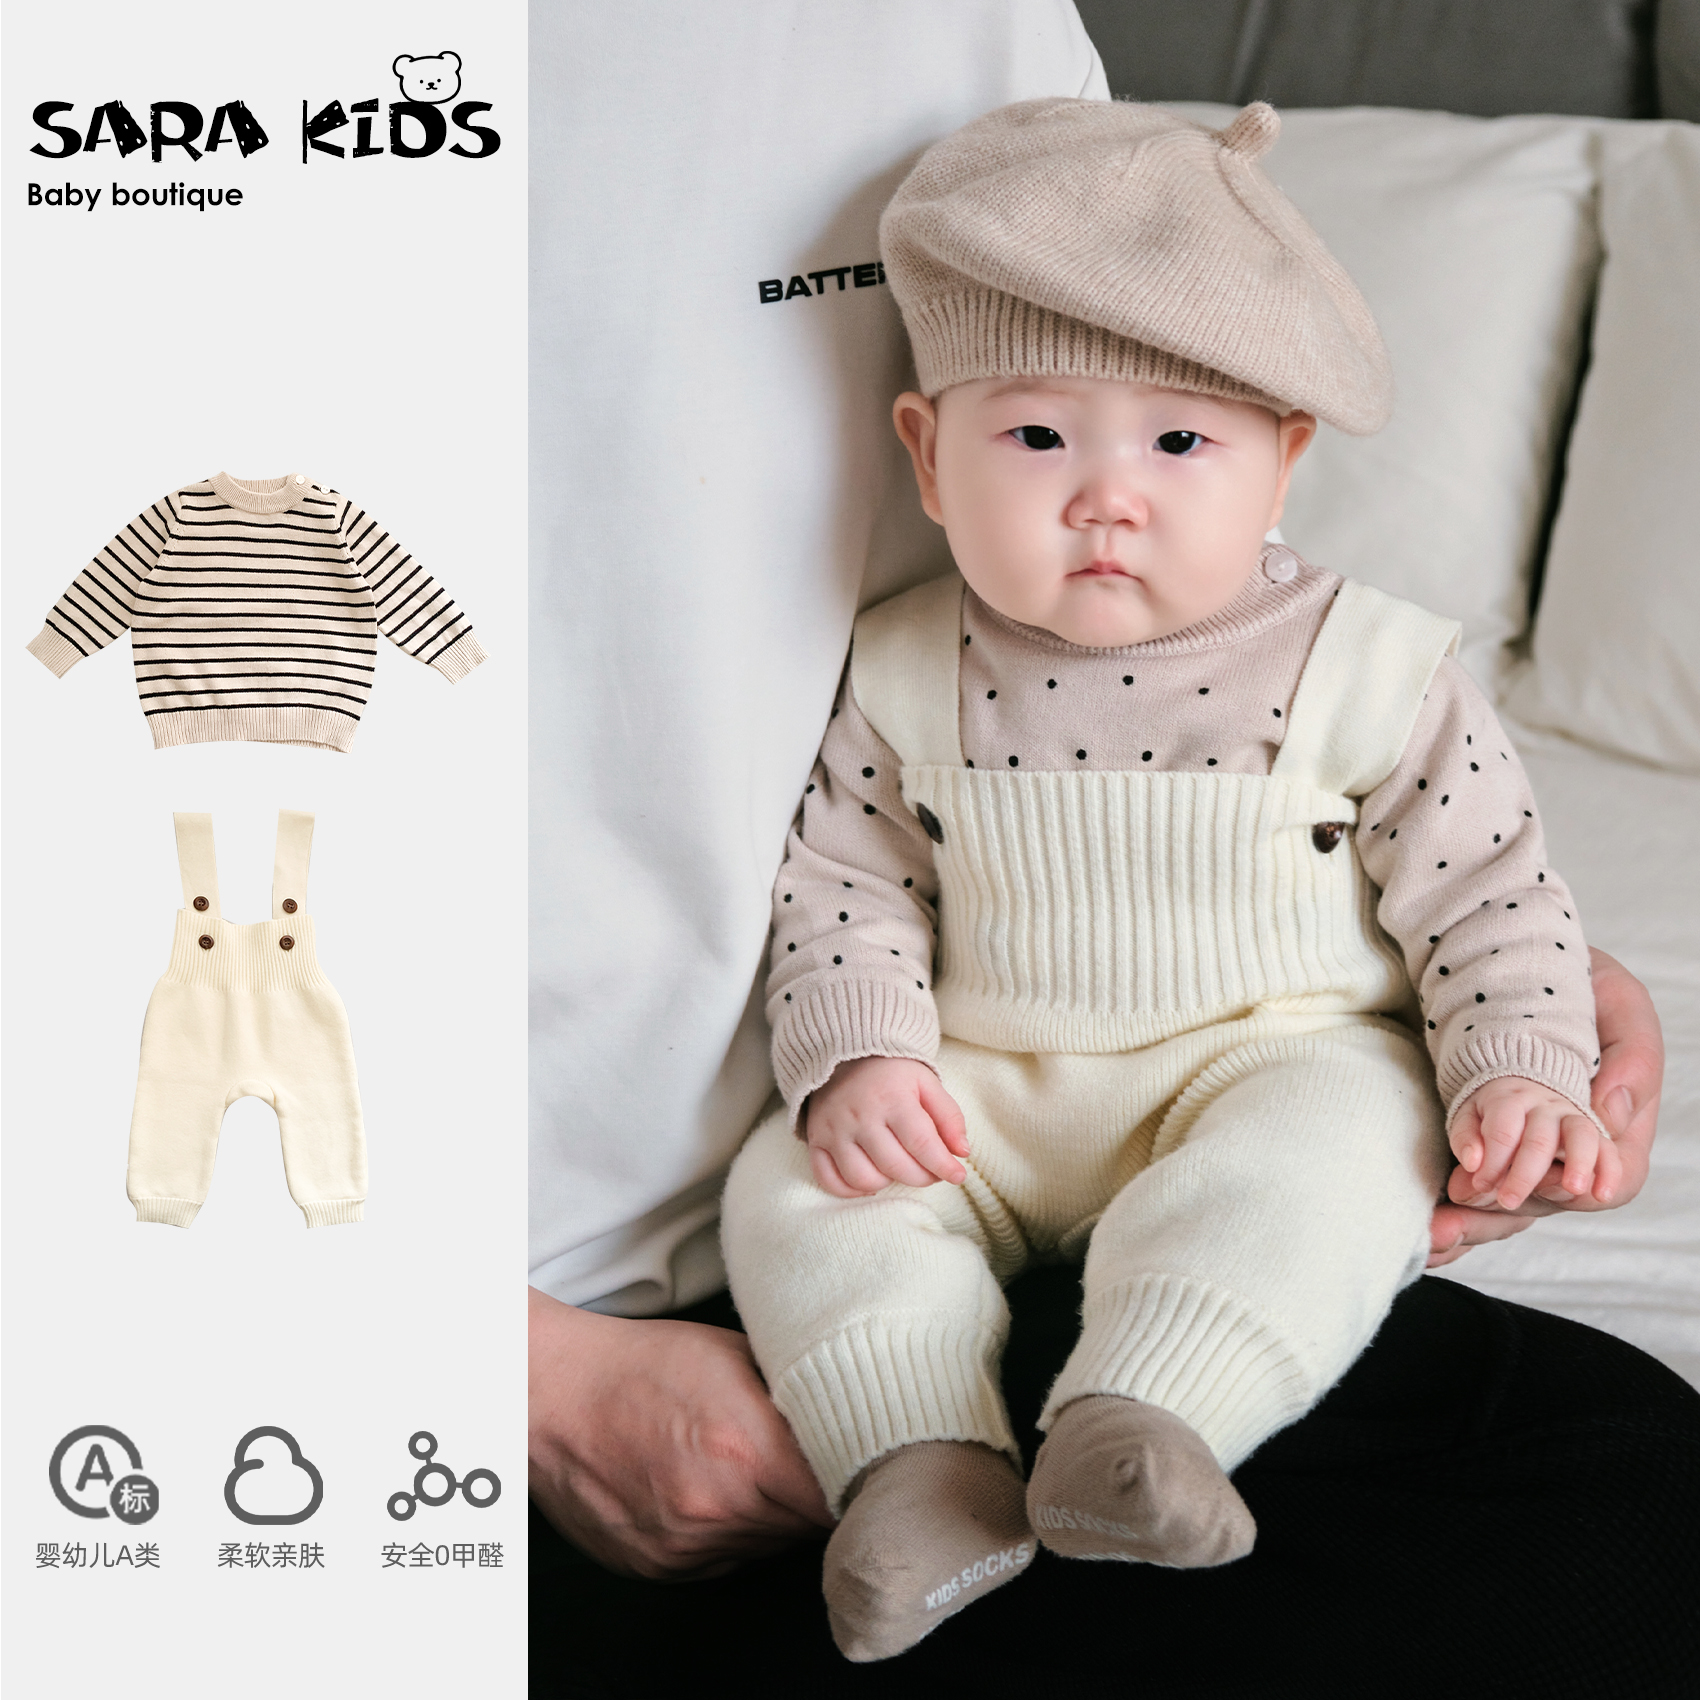 婴儿春装新款宝宝套装婴幼儿北欧风纯色针织背带裤条纹毛衣两件套